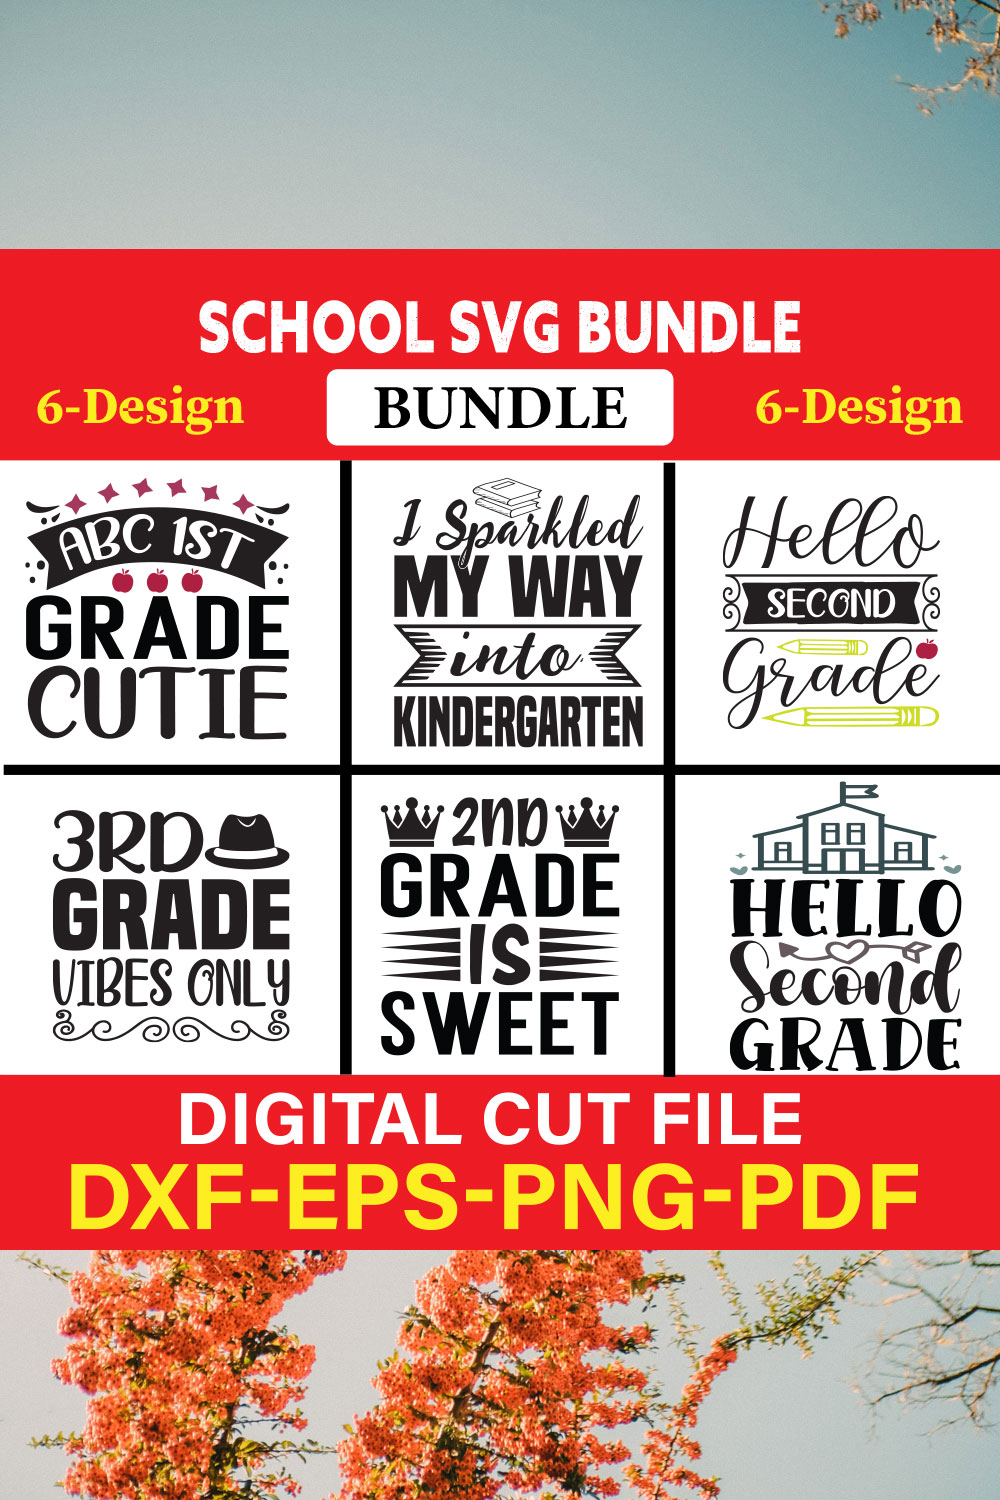 School svg bundle T-shirt Design Bundle Vol-12 pinterest preview image.